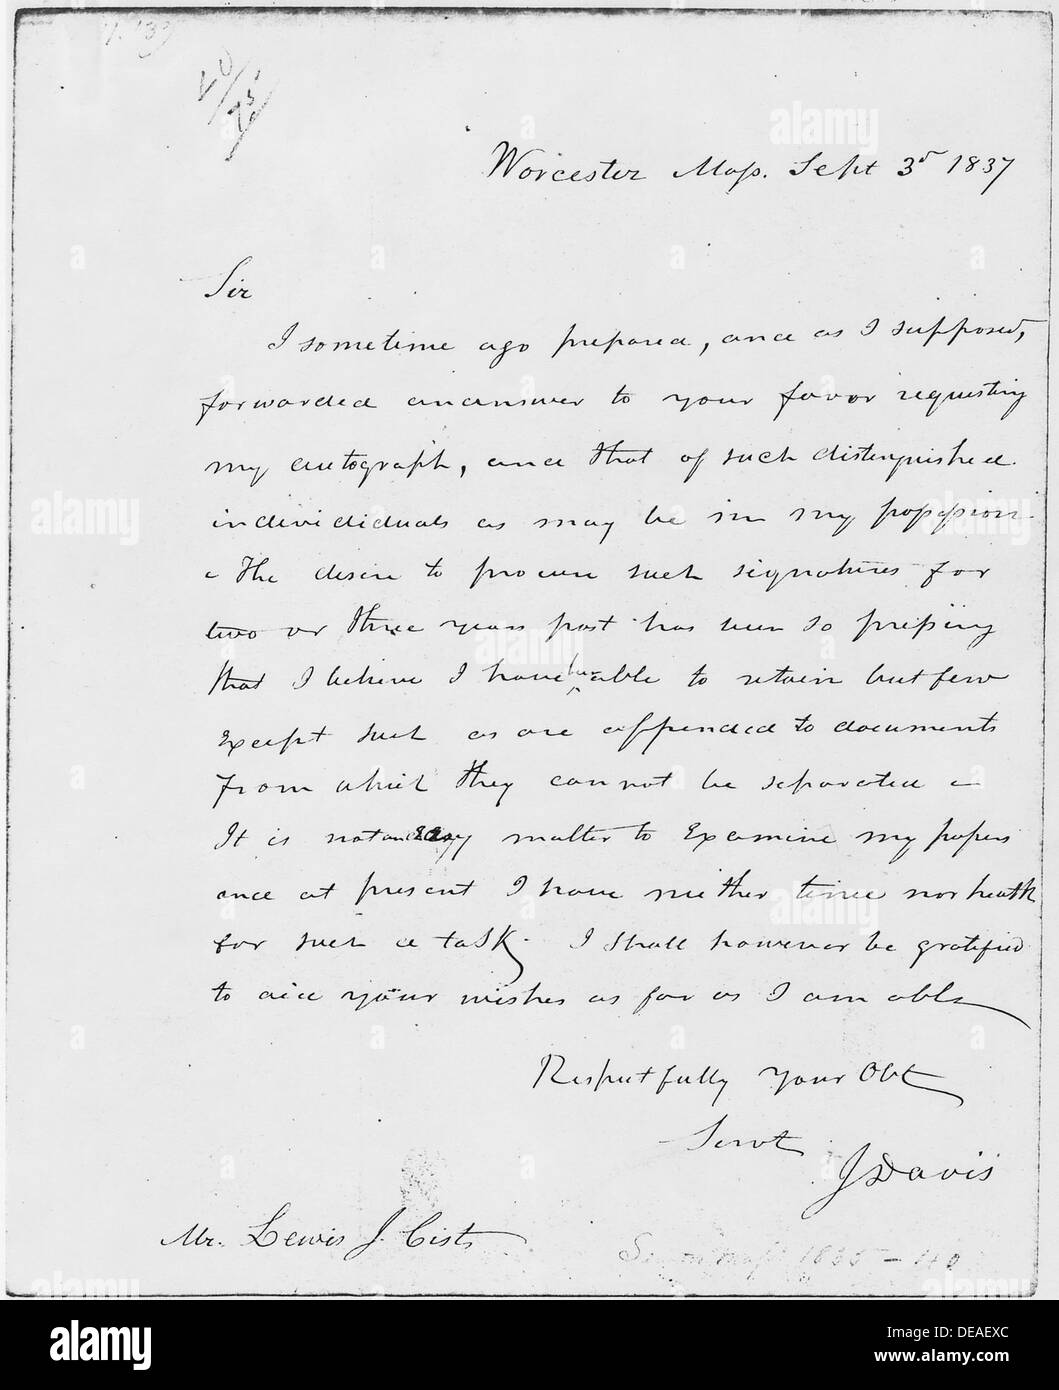 John Davis Letter to Louis Cist September 3, 1837 192962 Stock Photo